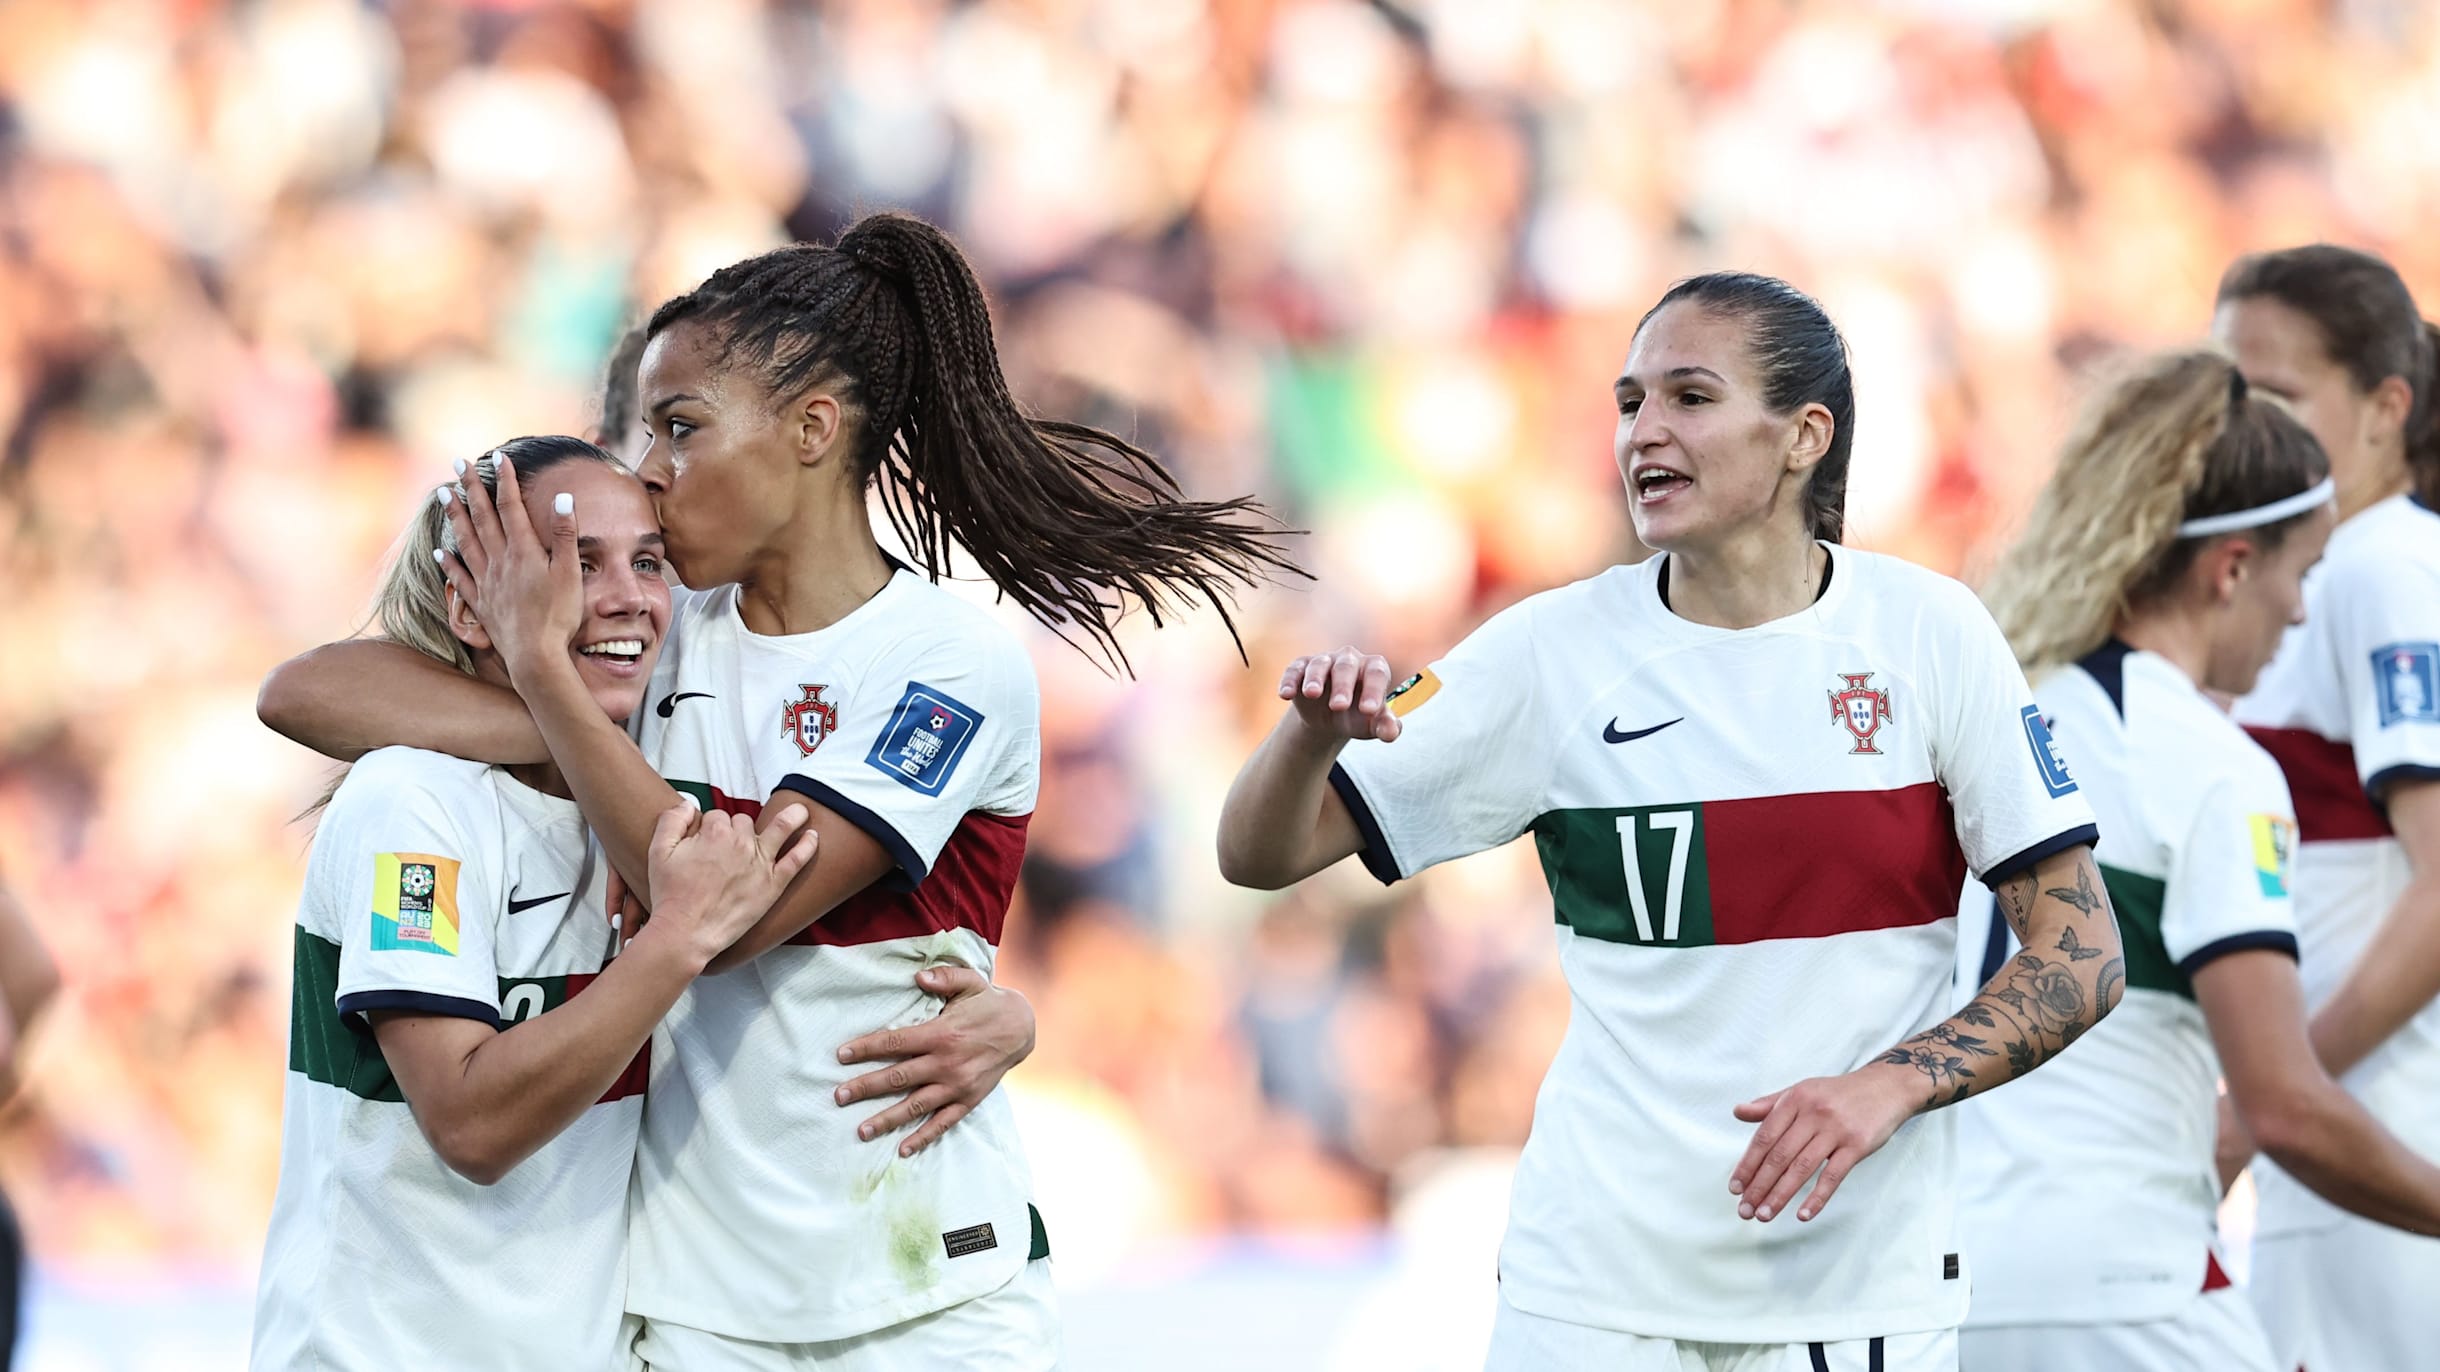 Como potenciar a visibilidade do futebol feminino em Portugal? ·